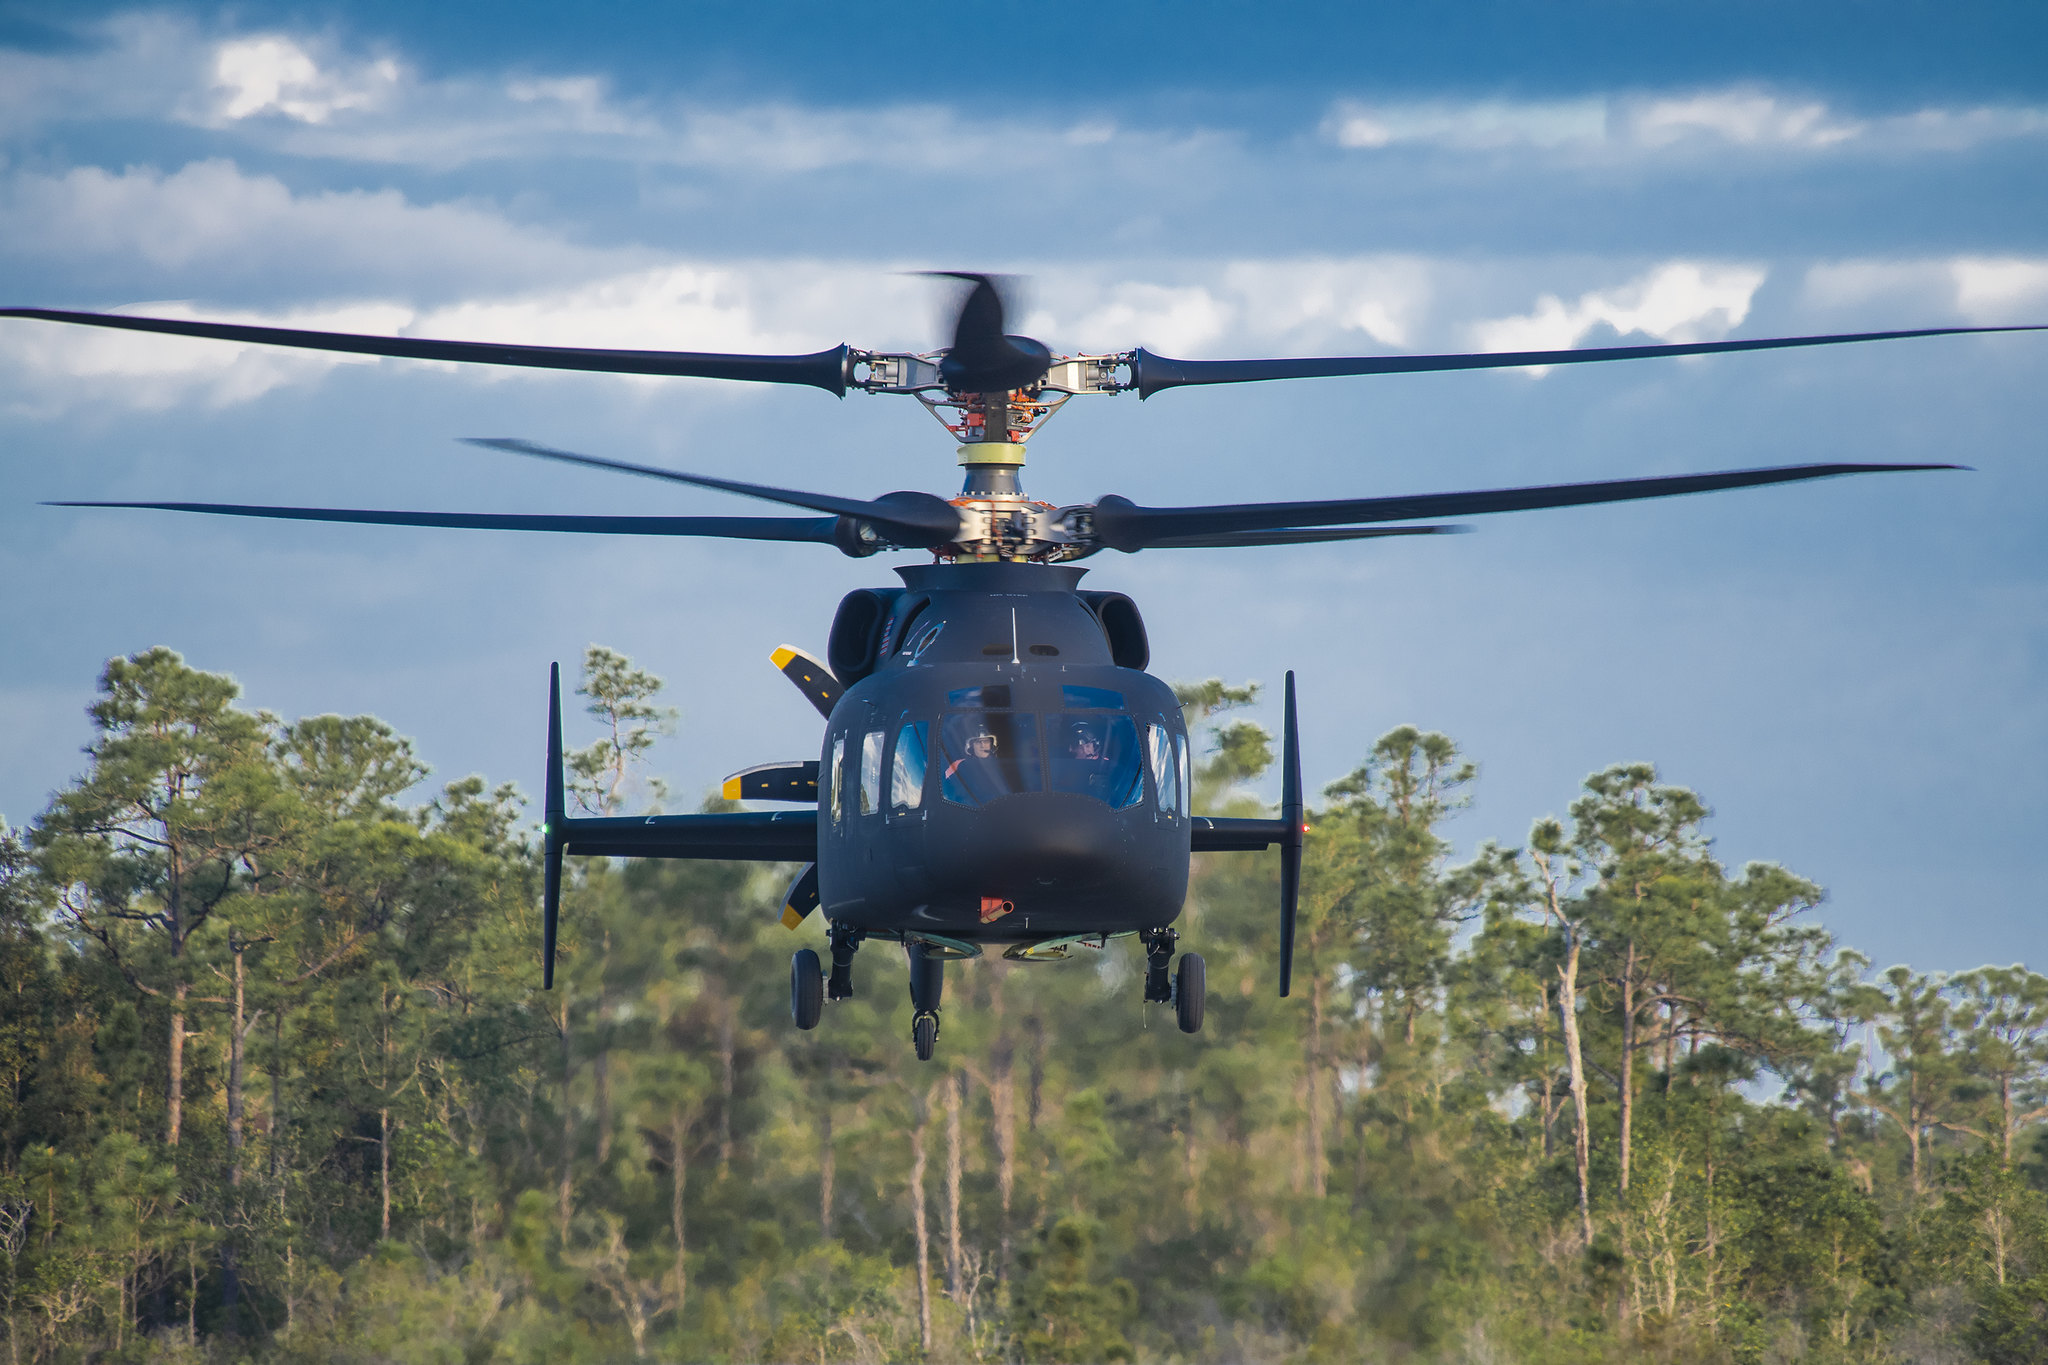 Αμερικανικός Στρατός: Ξεκίνησε ο διαγωνισμός για το ελικόπτερο που θα αντικαταστήσει το αποσυρθέν OH-58 Kiowa